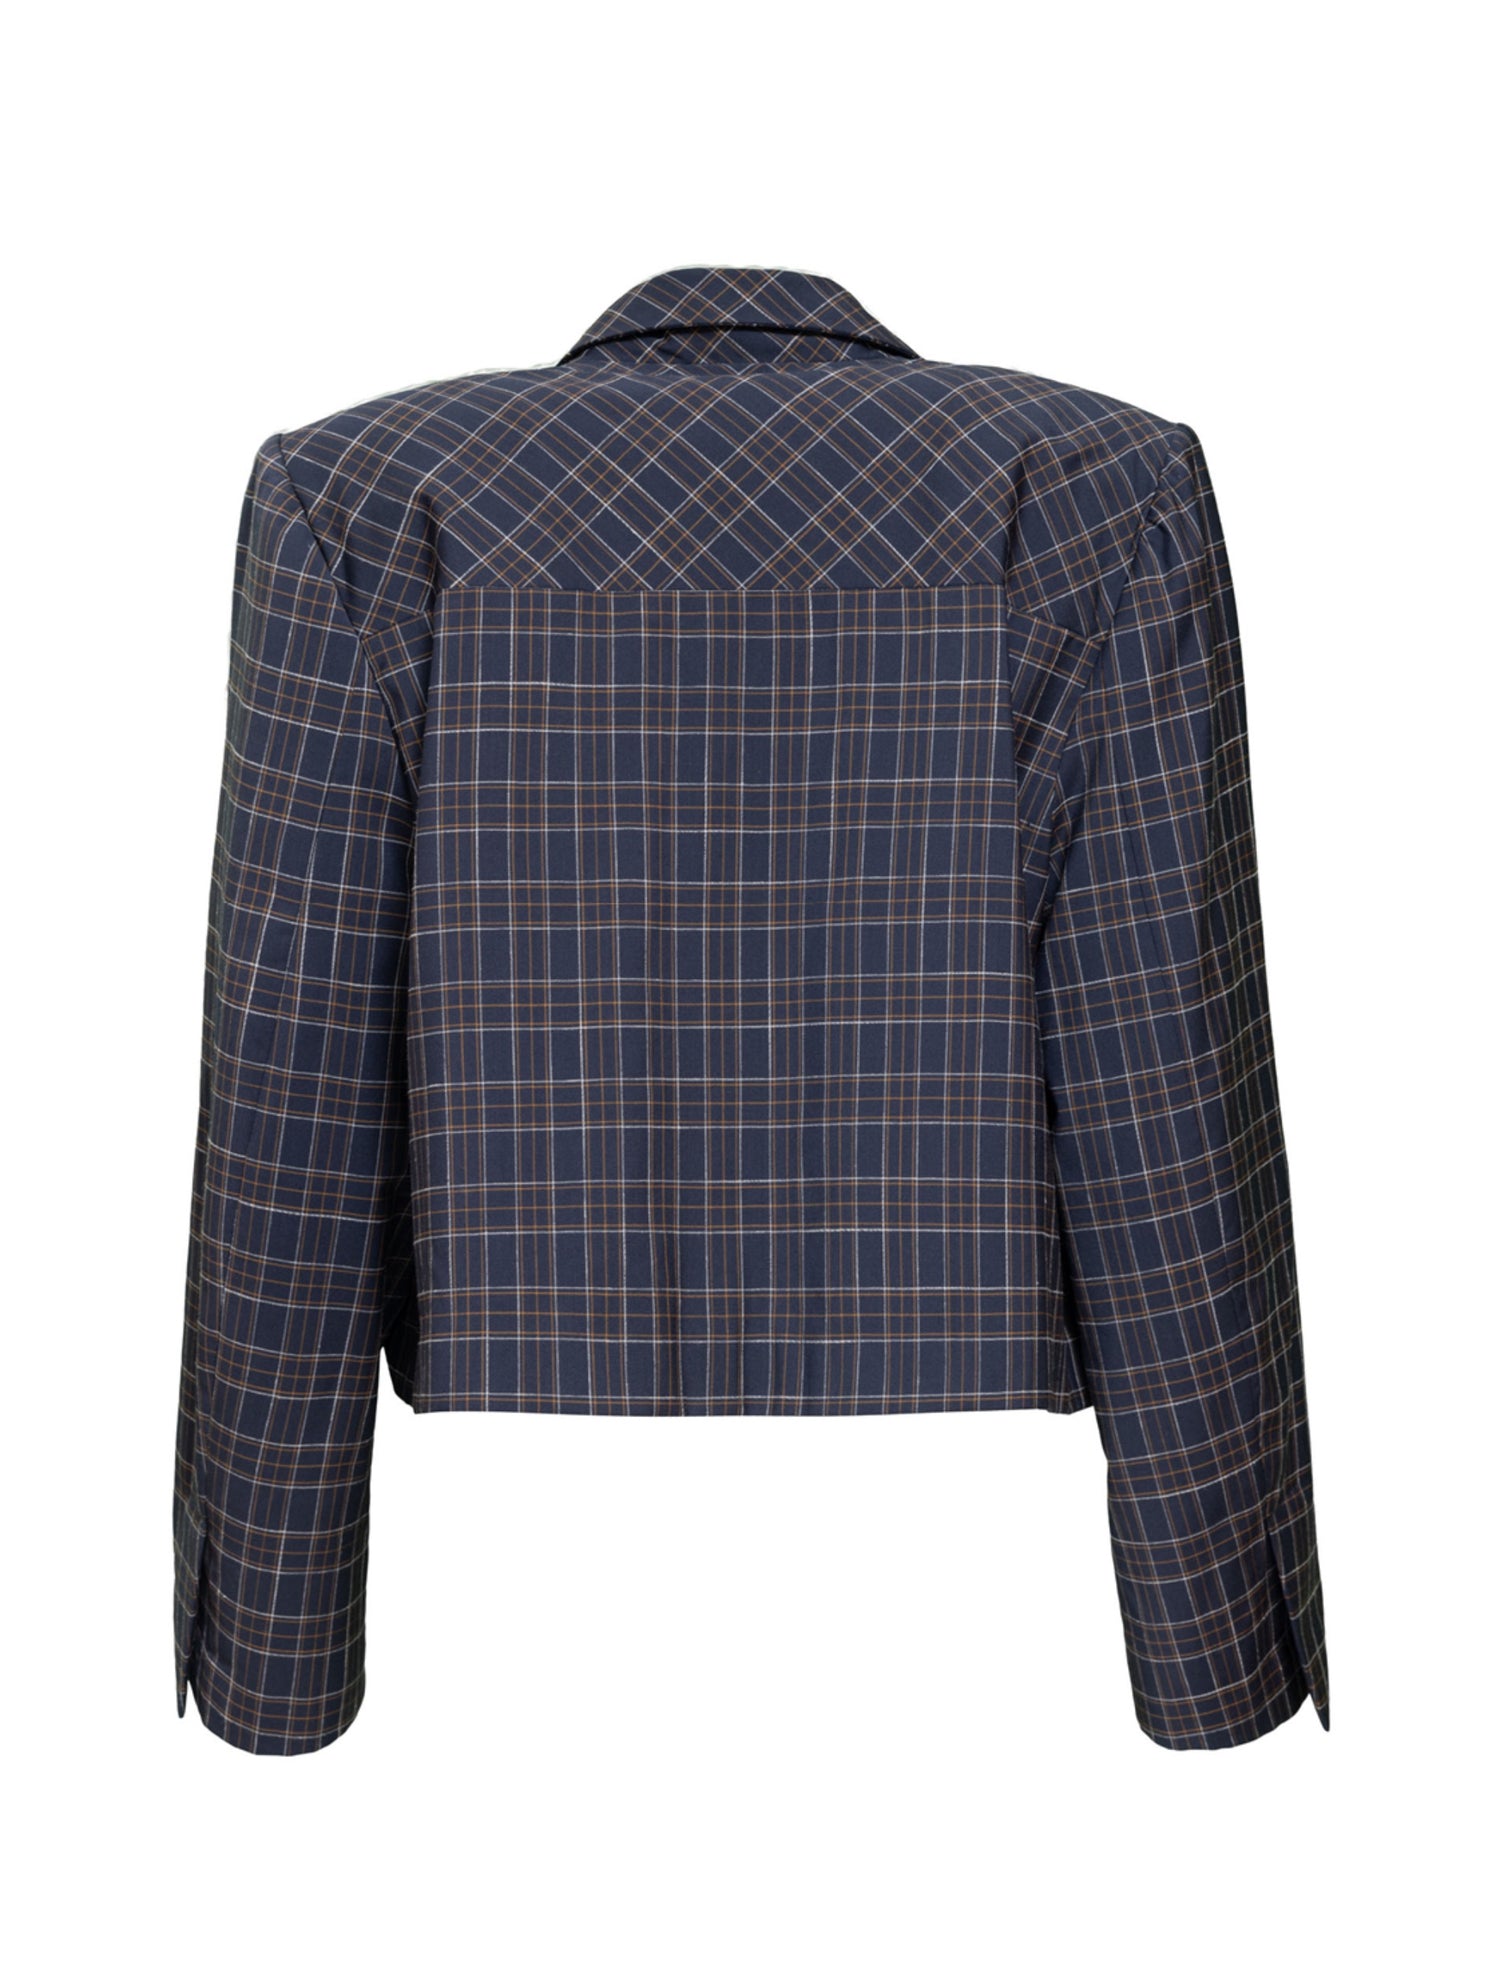 Hager - Merino Wool Short Blazer Jacket